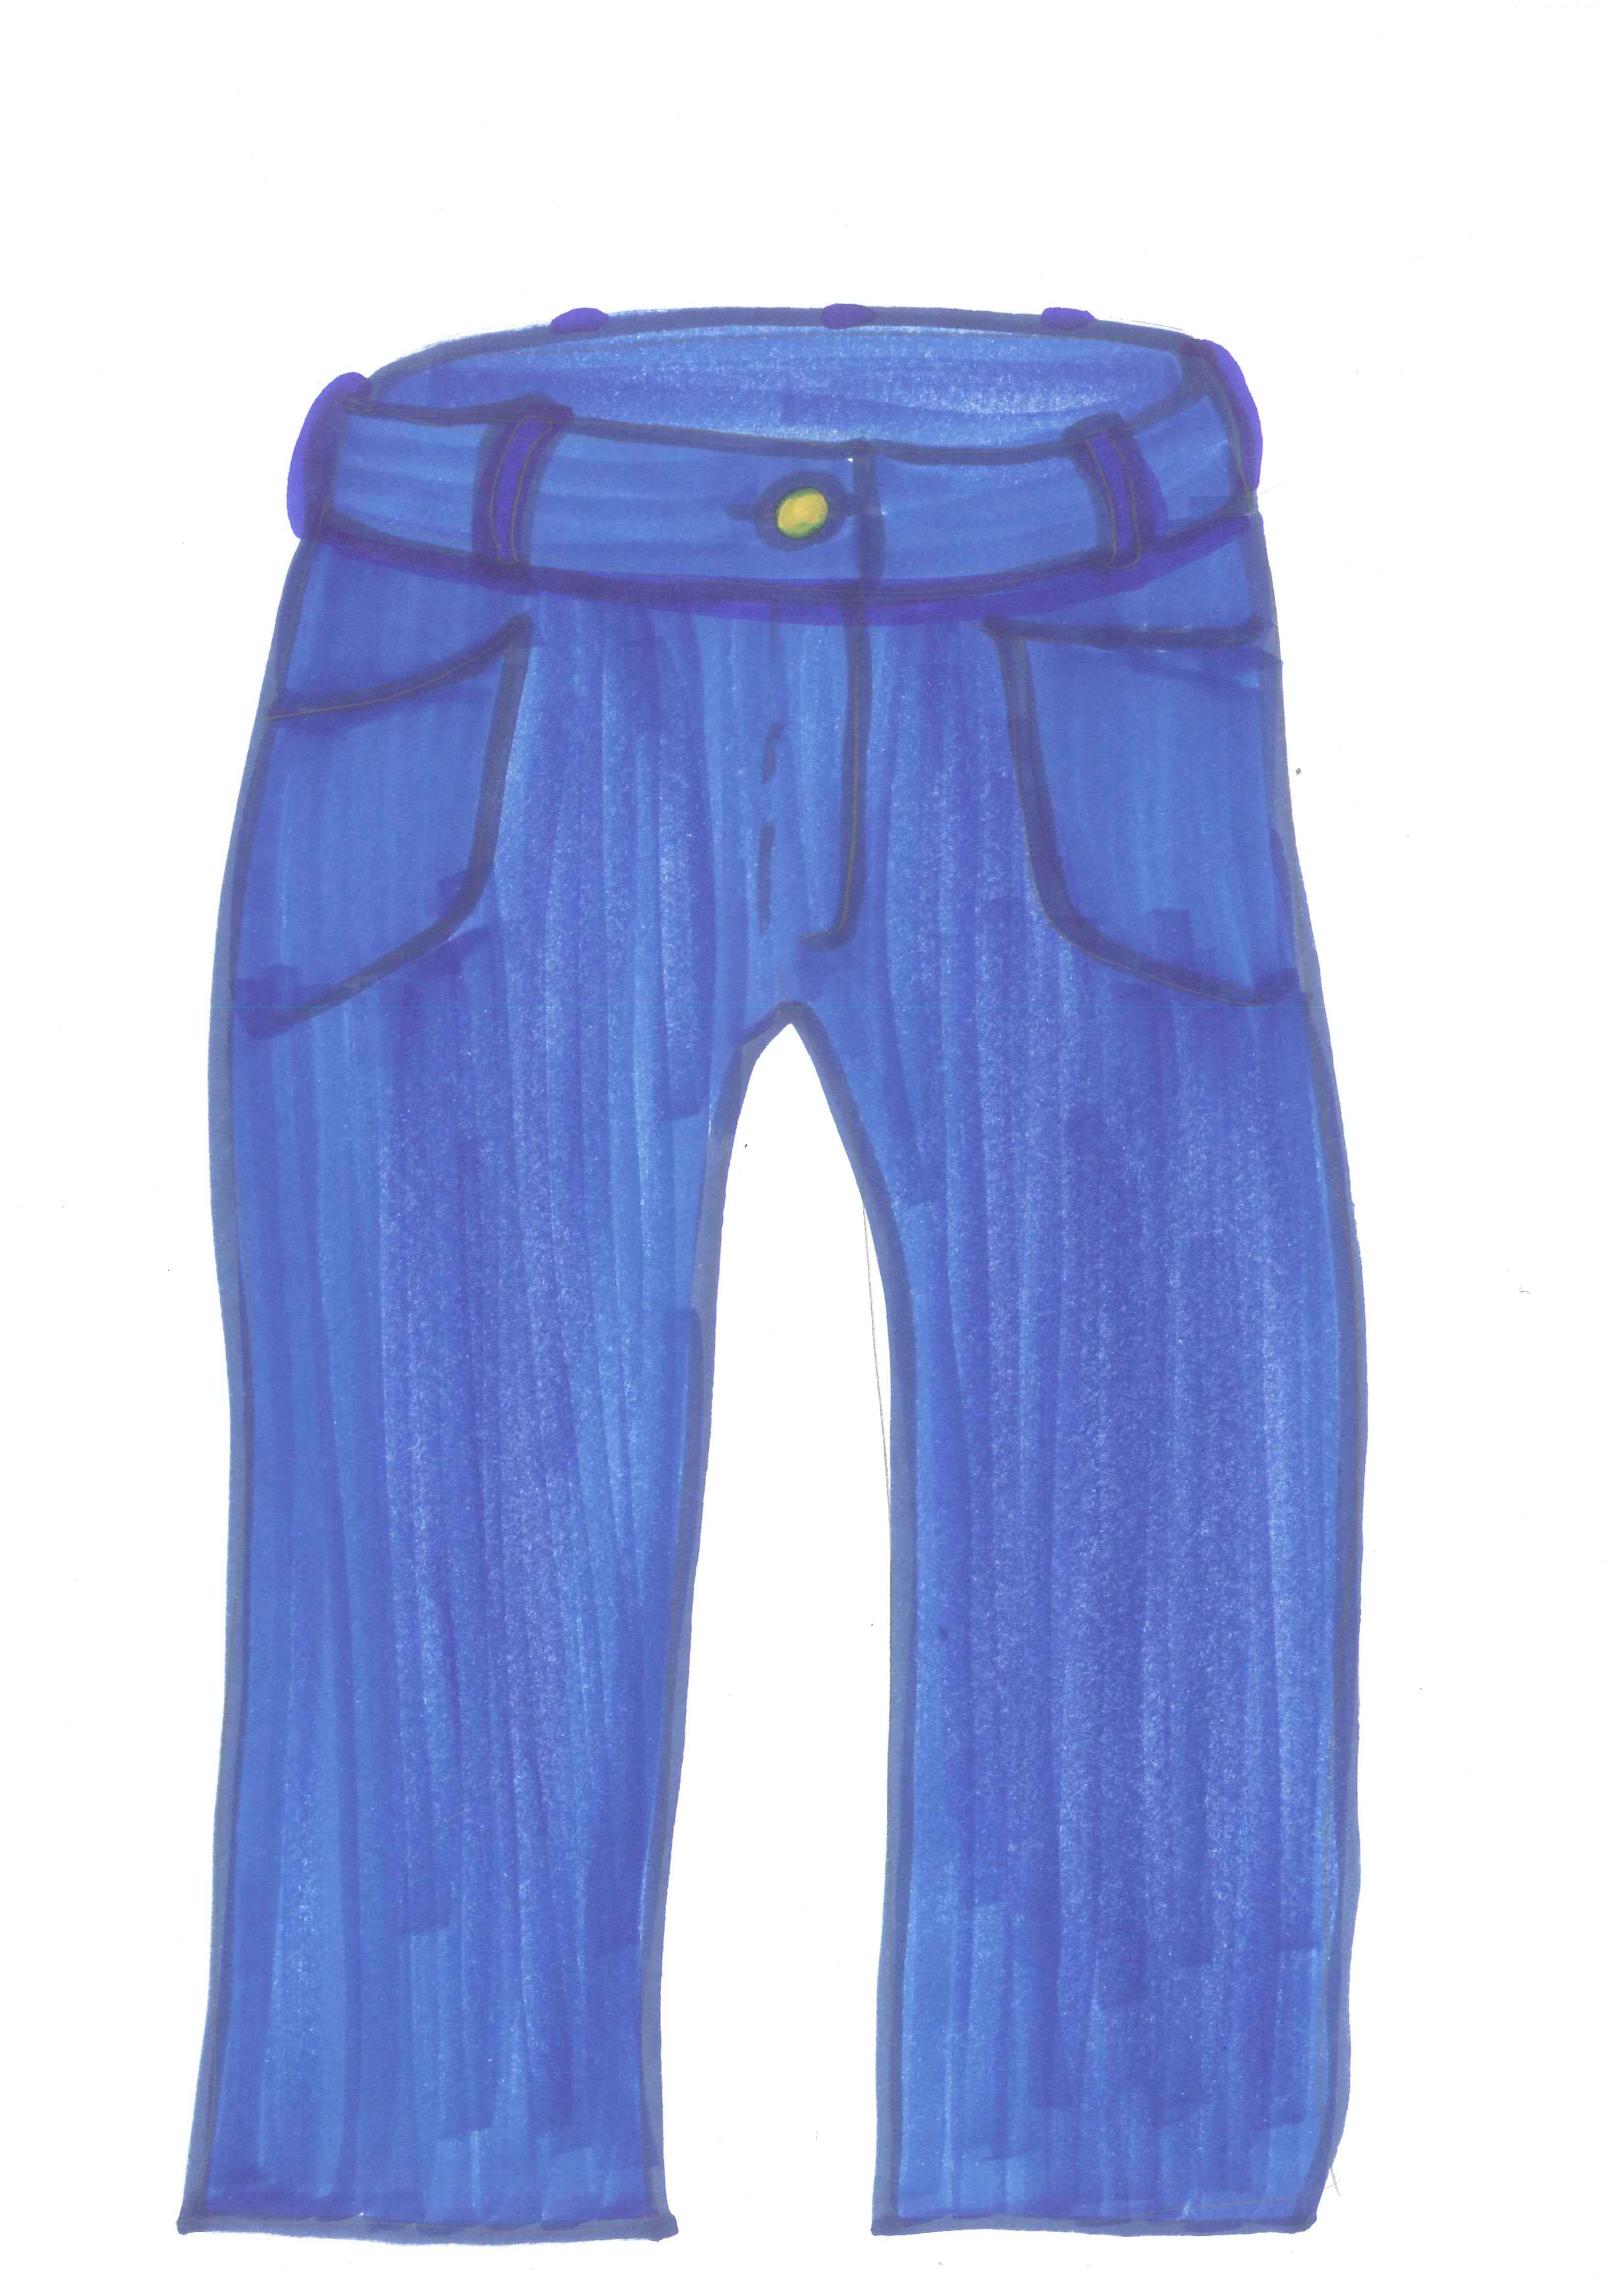 blue jeans clip art free - photo #22